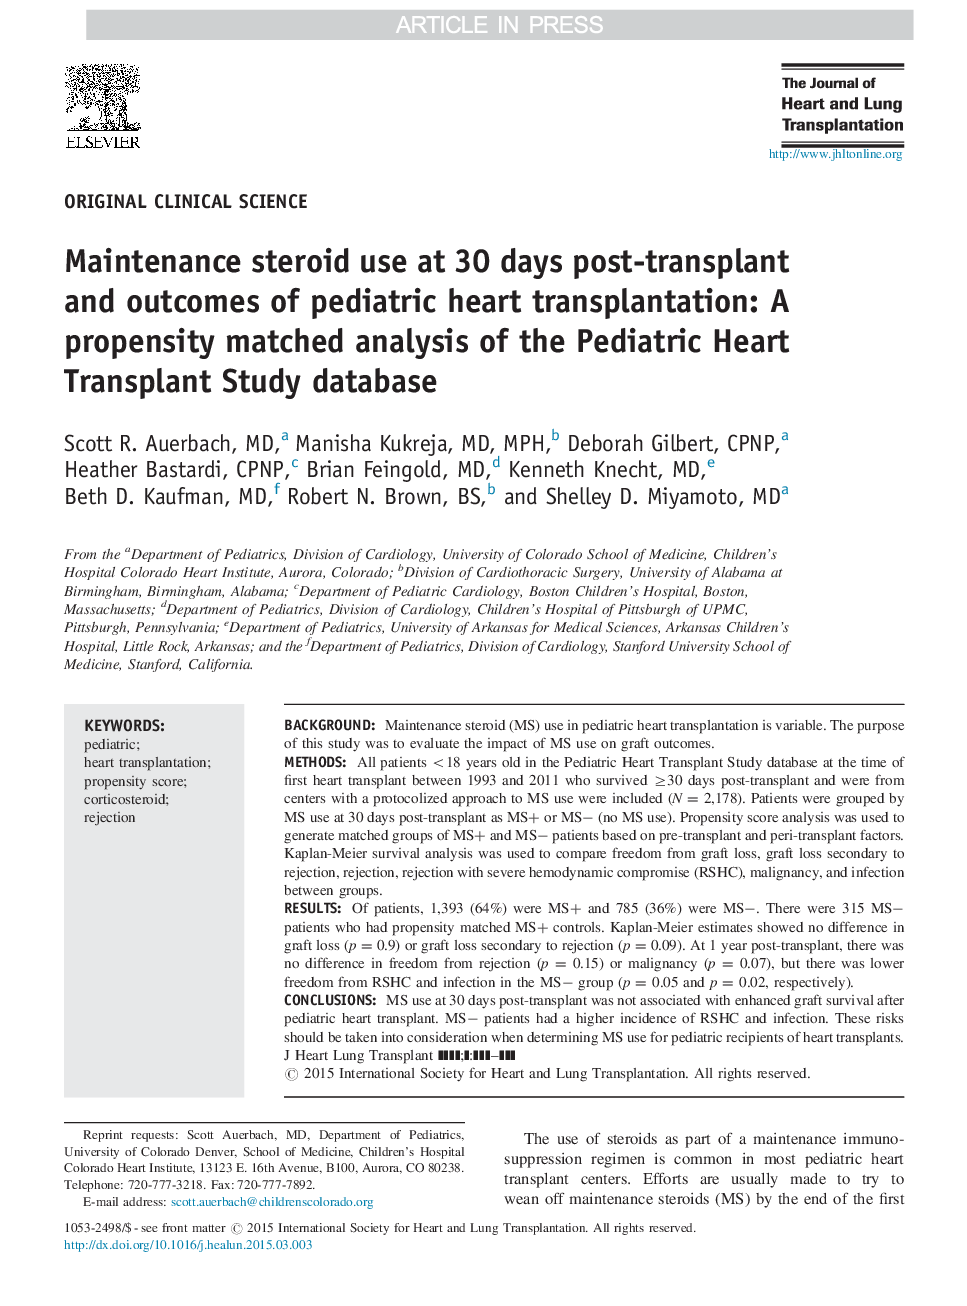 استفاده از استروئید نگهدارنده در 30 روز پس از پیوند و نتایج پیوند قلب کودکان: تجزیه و تحلیل همبستگی قیاسی پایگاه داده مطالعه پیوند قلب کودکان 